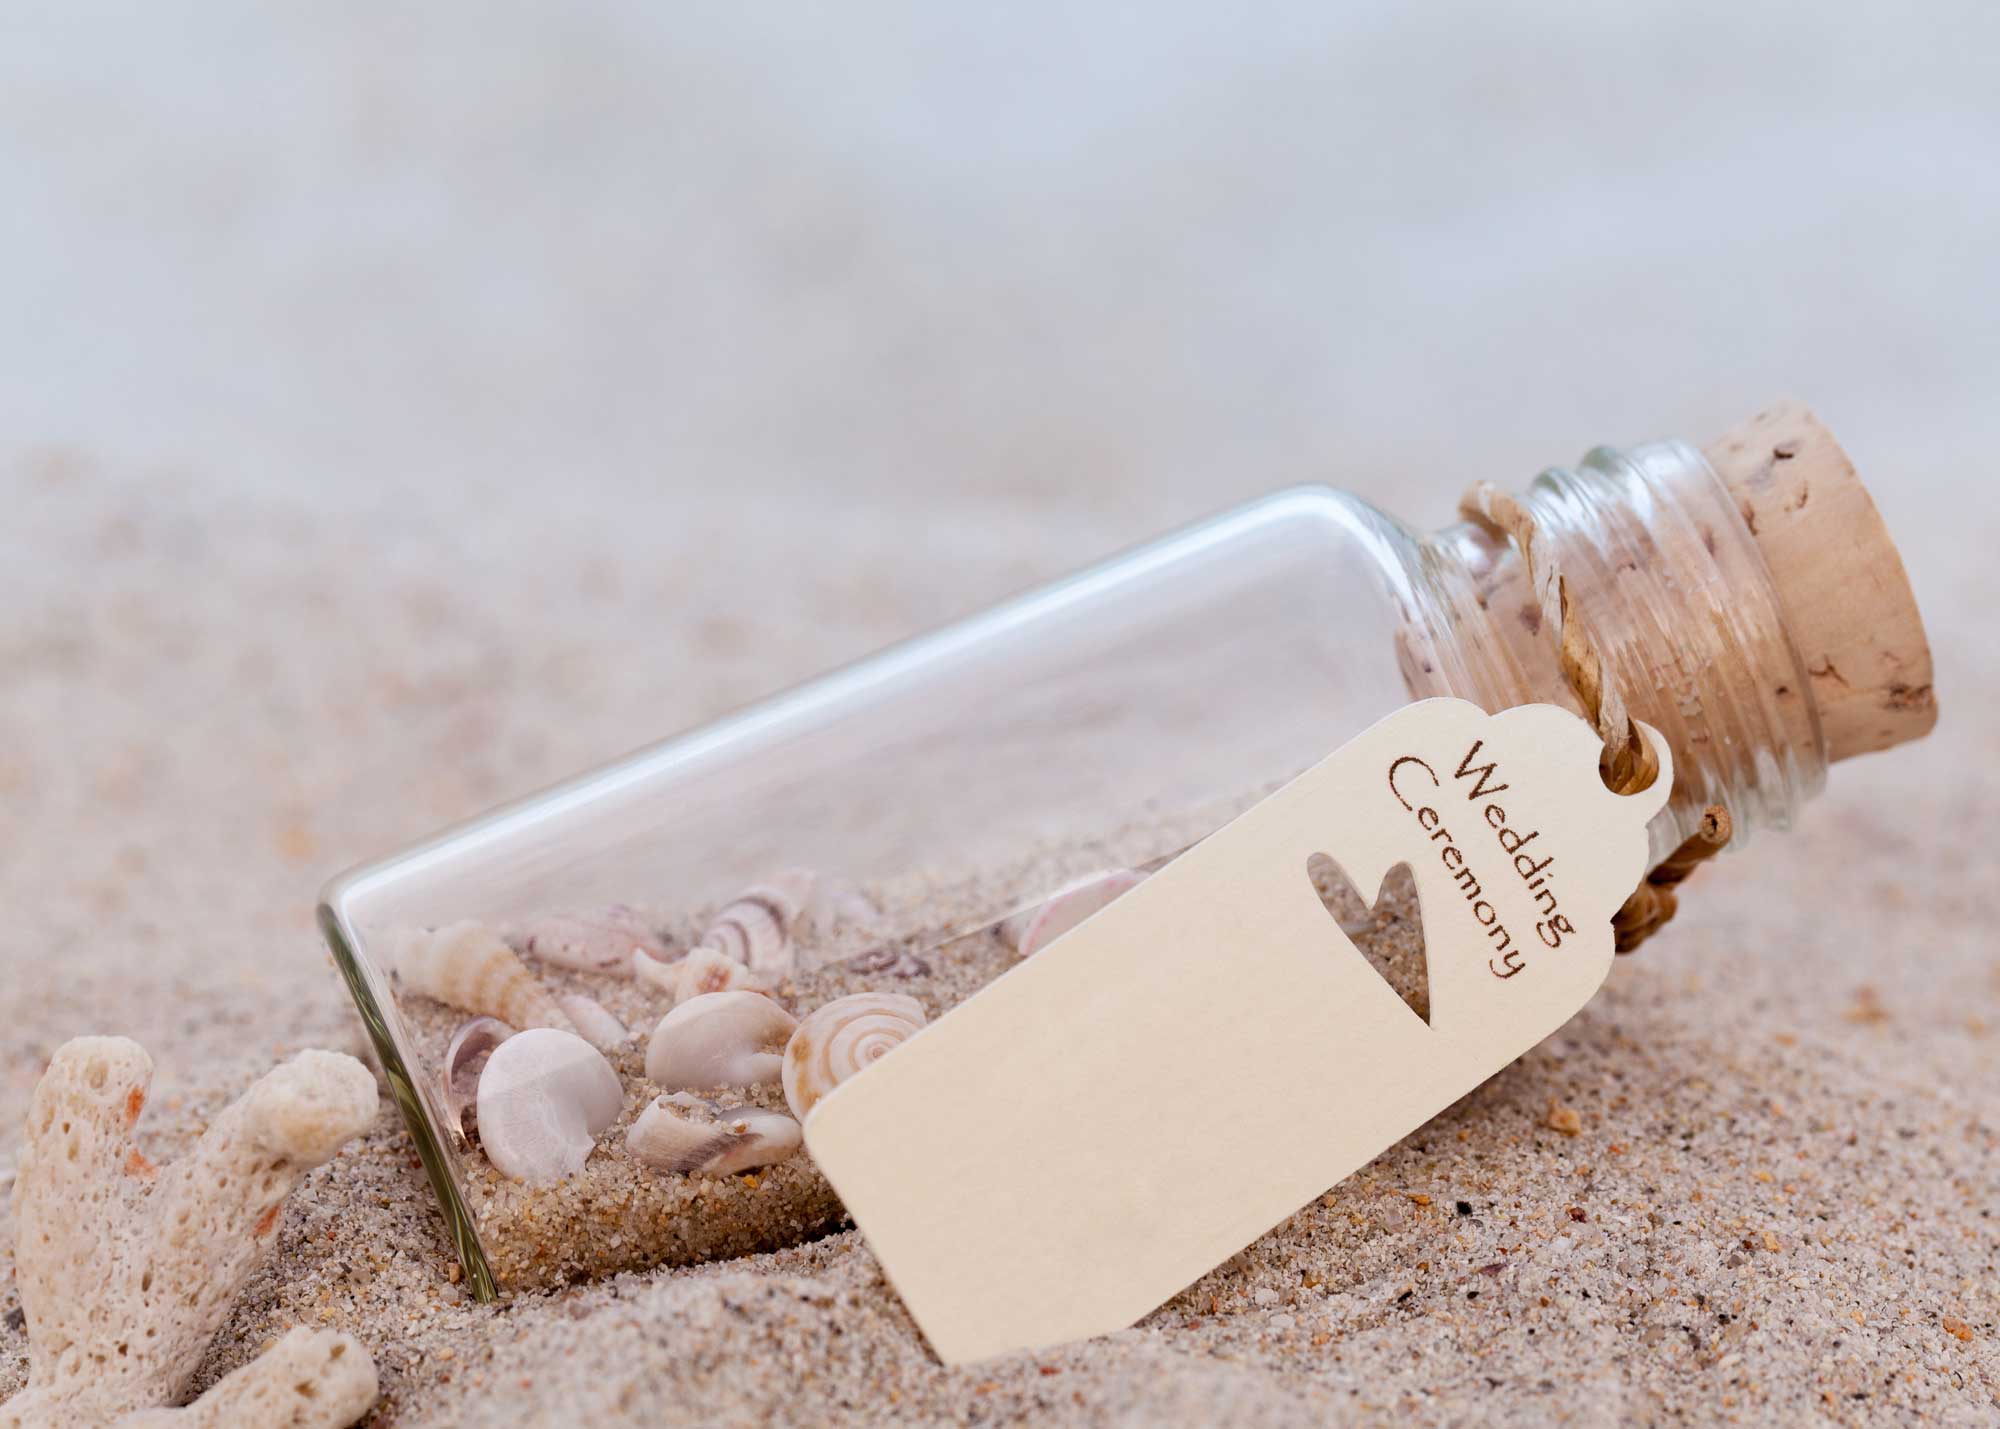 Message in a bottle lying on a sandy beach